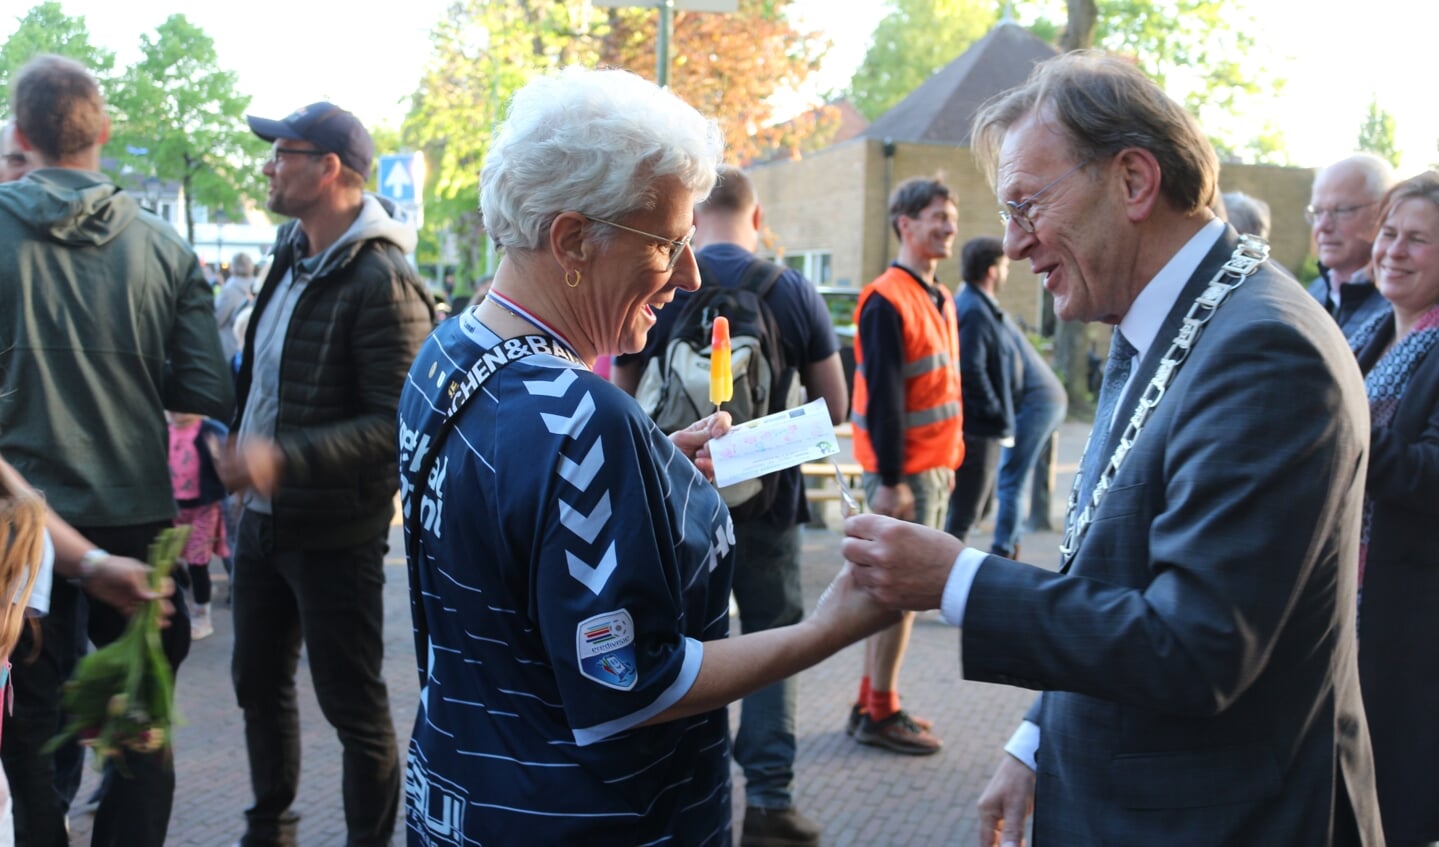 Burgemeester Koos Janssen reikt medailles uit bij het defilé van de eerste Austerlitze avondvierdaagse.